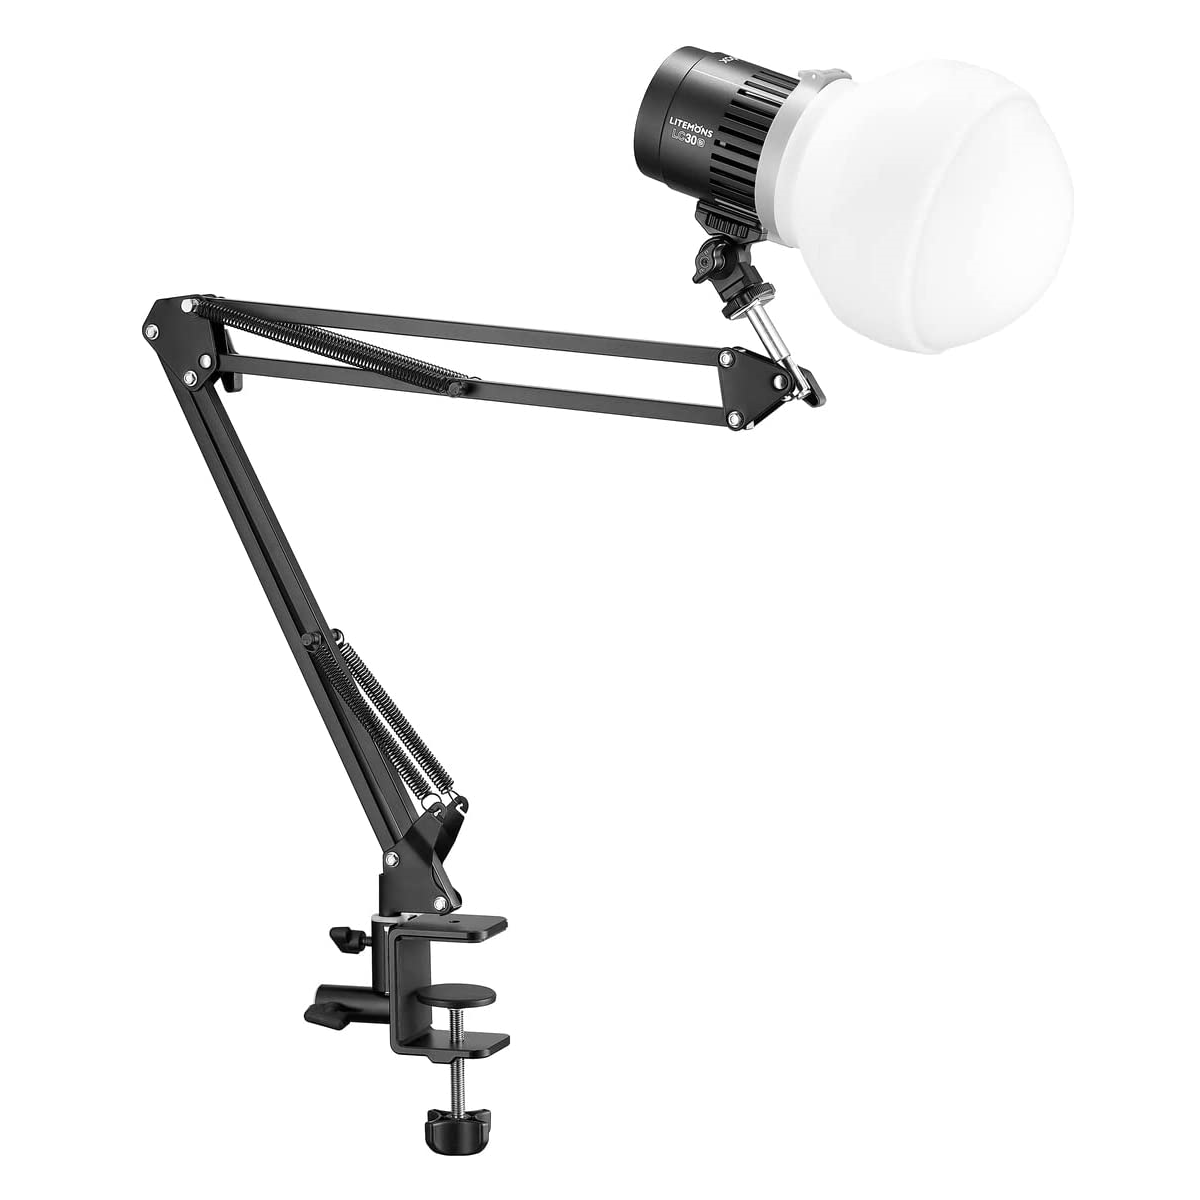 Осветитель Godox Litemons LC30D-K1, светодиодный, 33 Вт, 5600К, комплект